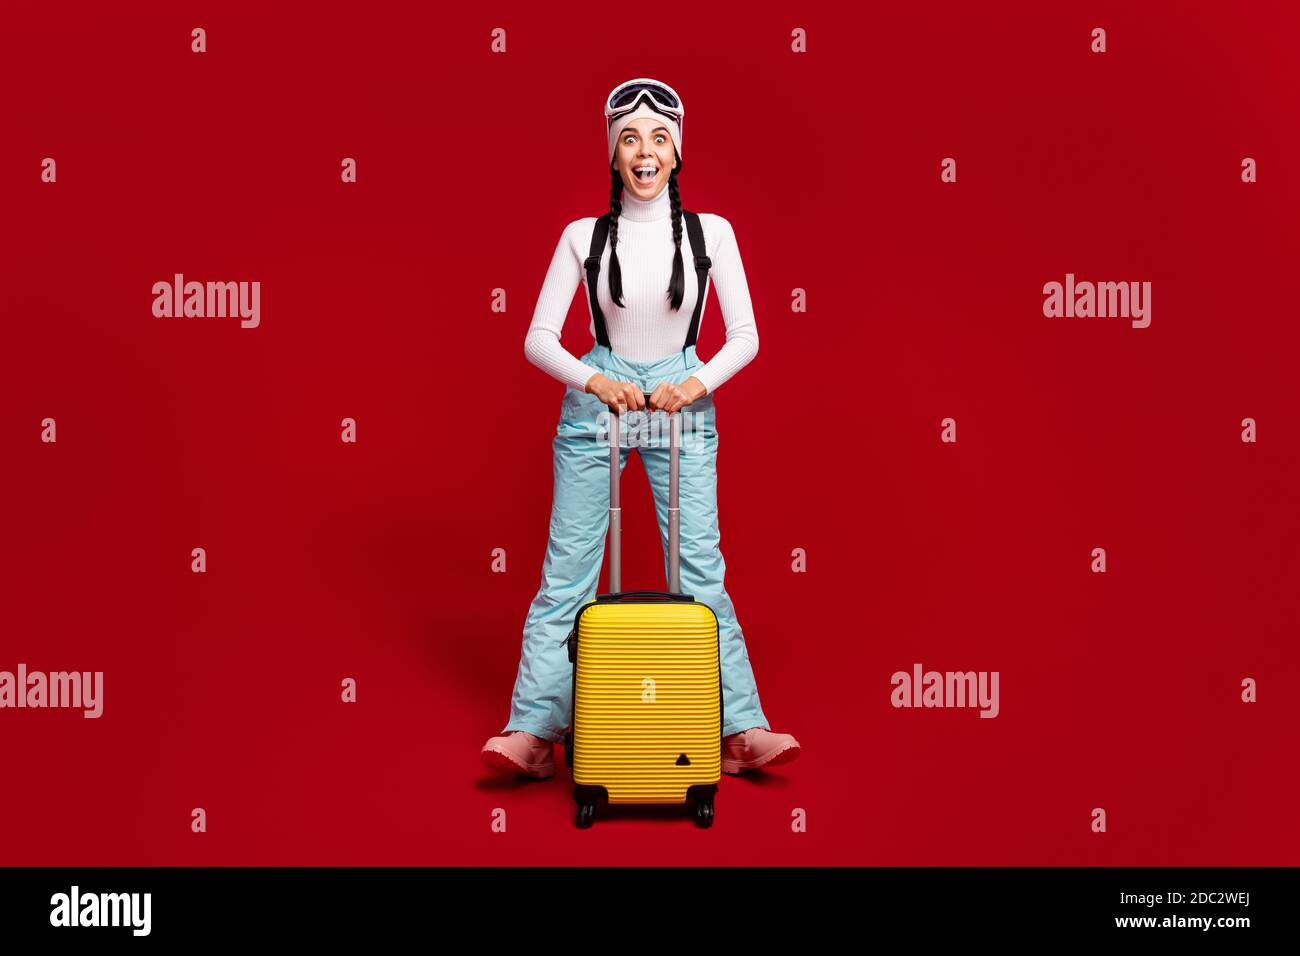 Foto in voller Größe von jungen glücklich aufgeregt verrückte Mädchen mit  Schwänze tragen blaue Hosen halten Gepäck isoliert auf rote Farbe  Hintergrund Stockfotografie - Alamy